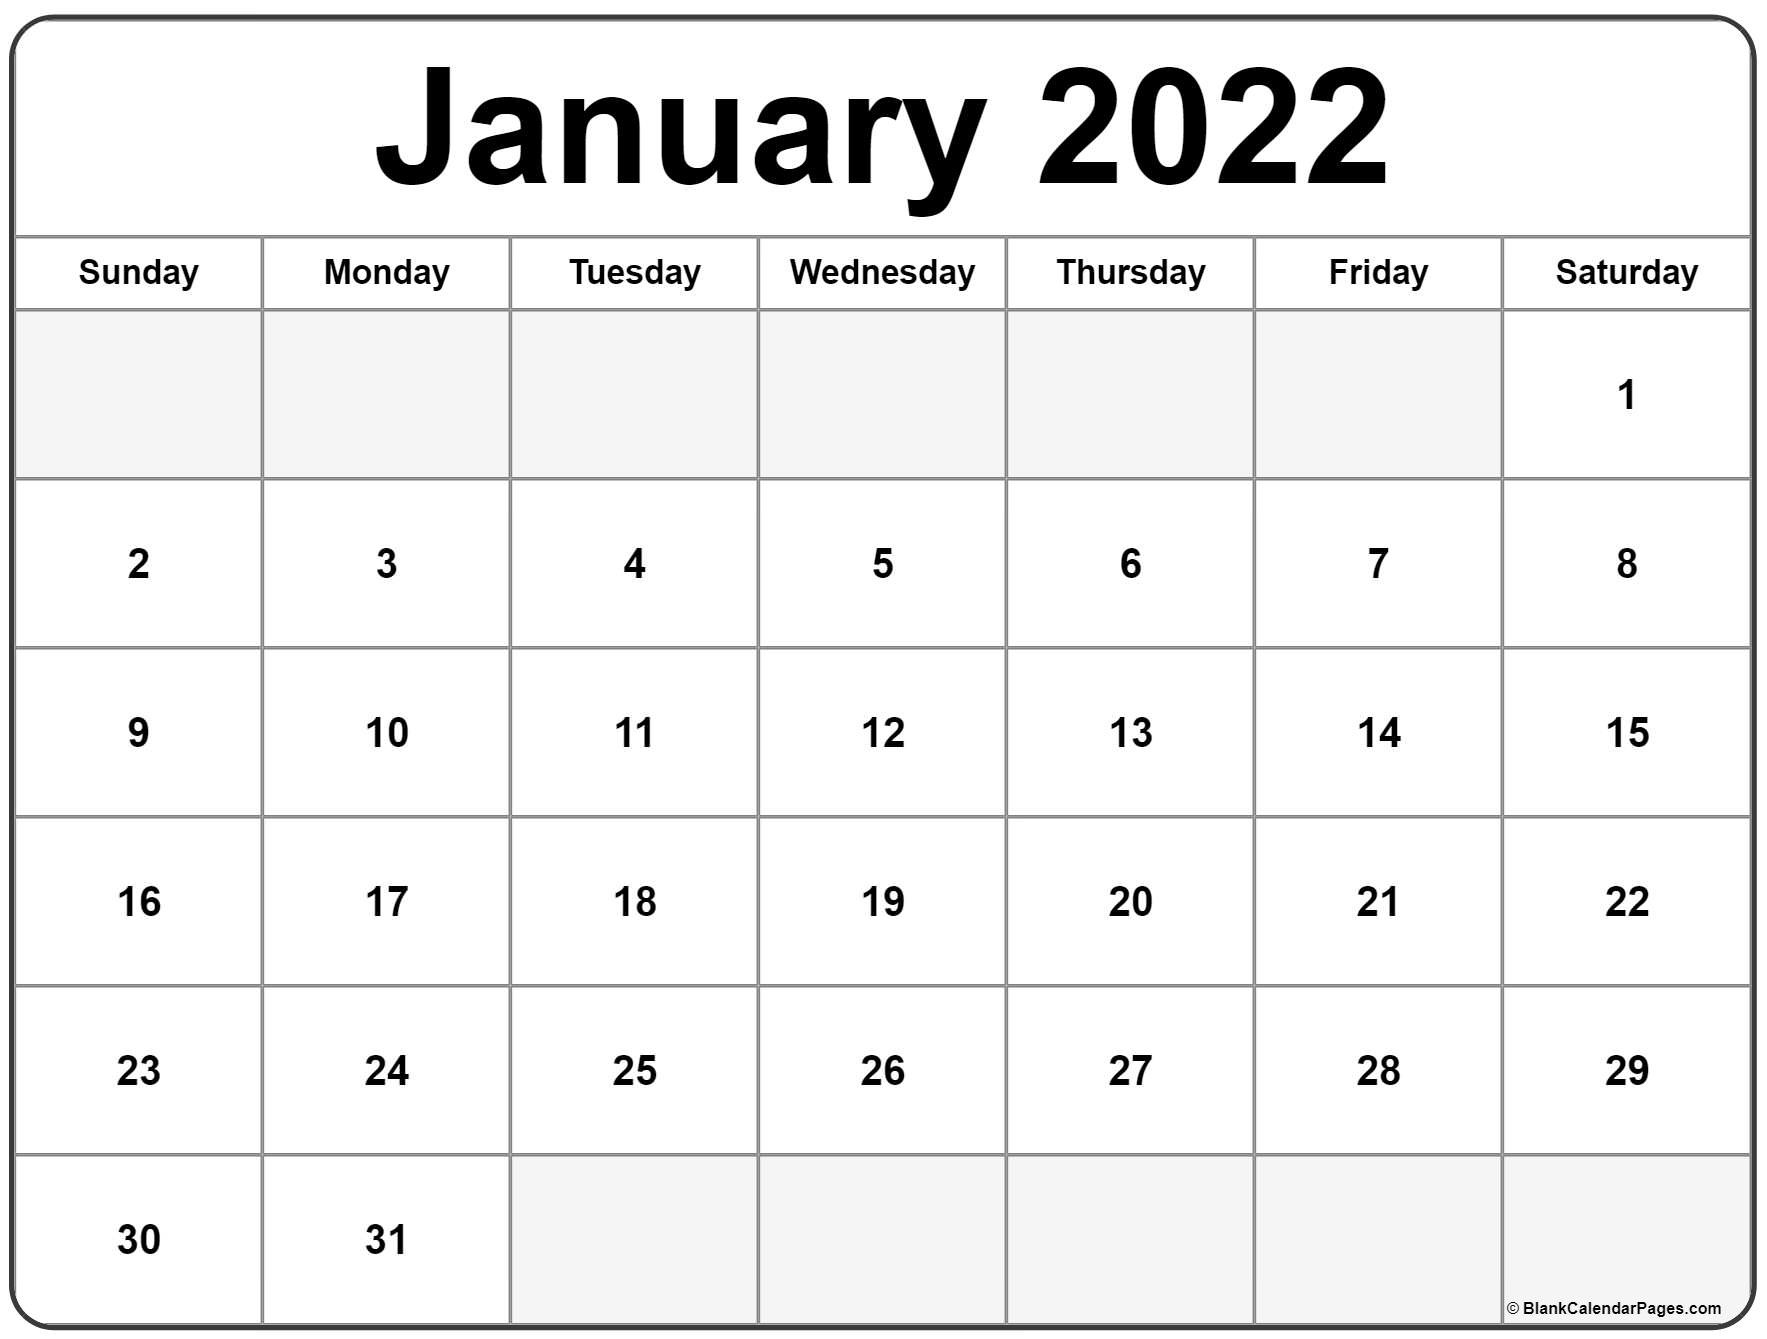 Hpu Fall 2022 Calendar